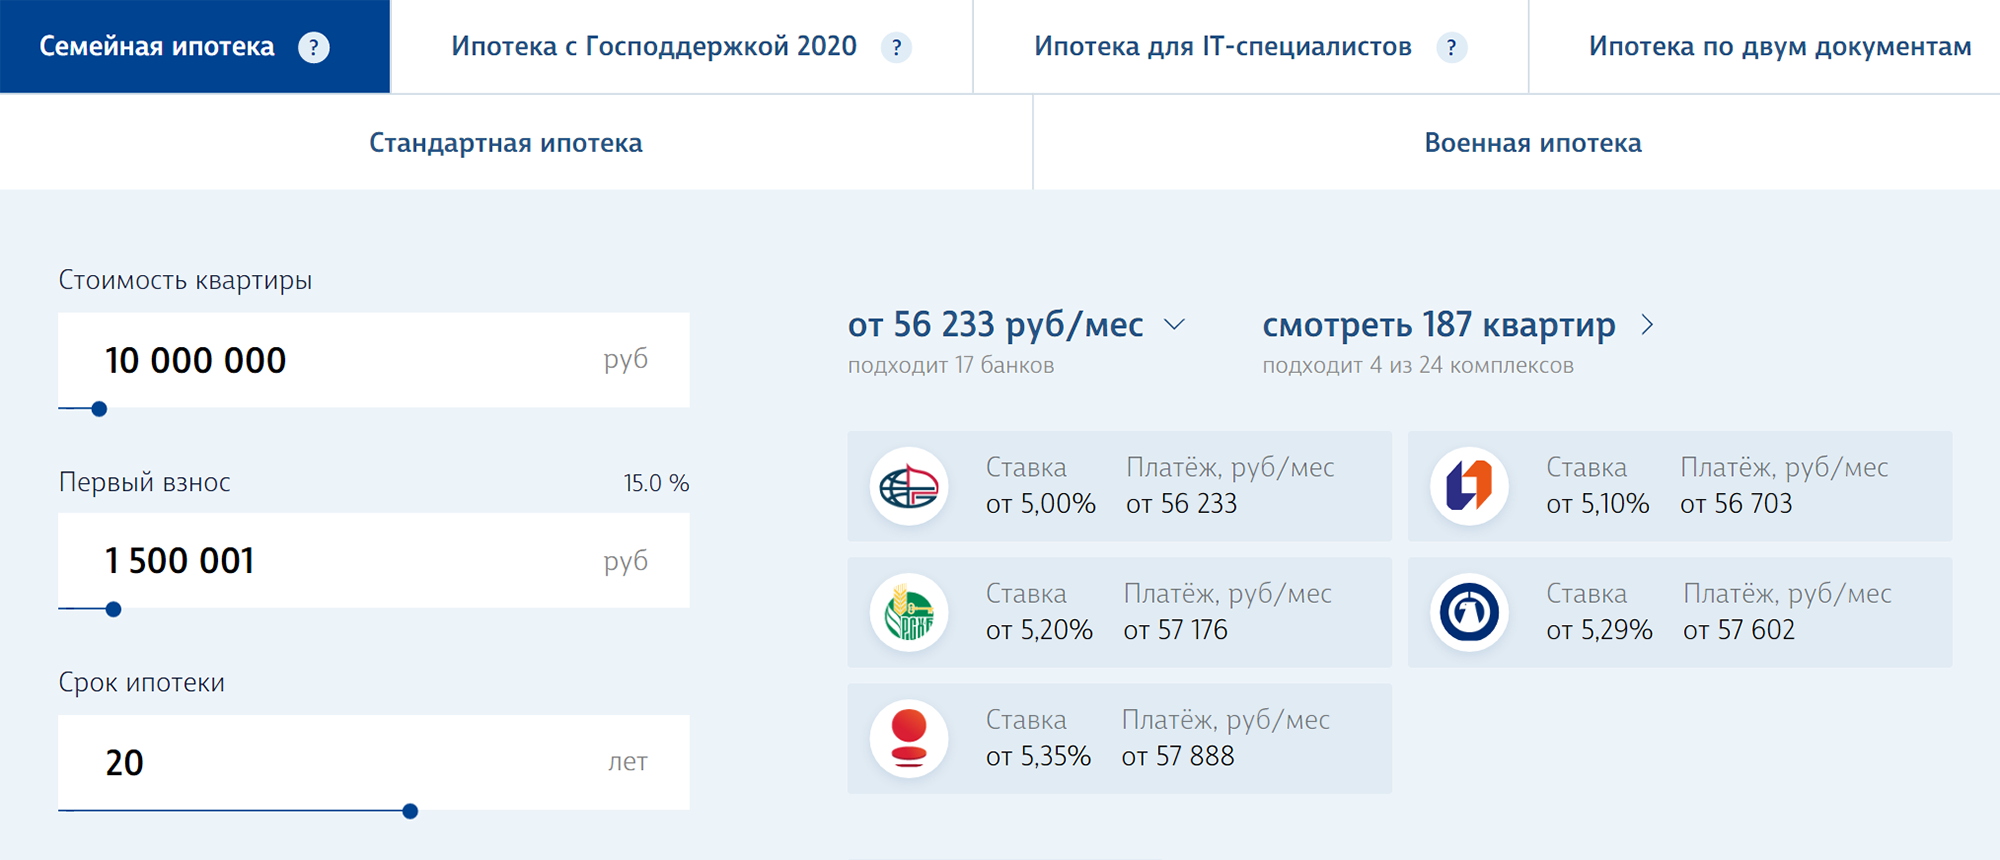 «Промсвязьбанк» предлагает ставки от 4,35% по ИТ⁠-⁠ипотеке и 5,1% по семейной. По стандартной ипотечной программе, без финансирования государством, ставка от 7,59% в «Уралсибе». Программ с околонулевыми ставками на сайте застройщика уже нет. Источник: lsr.ru